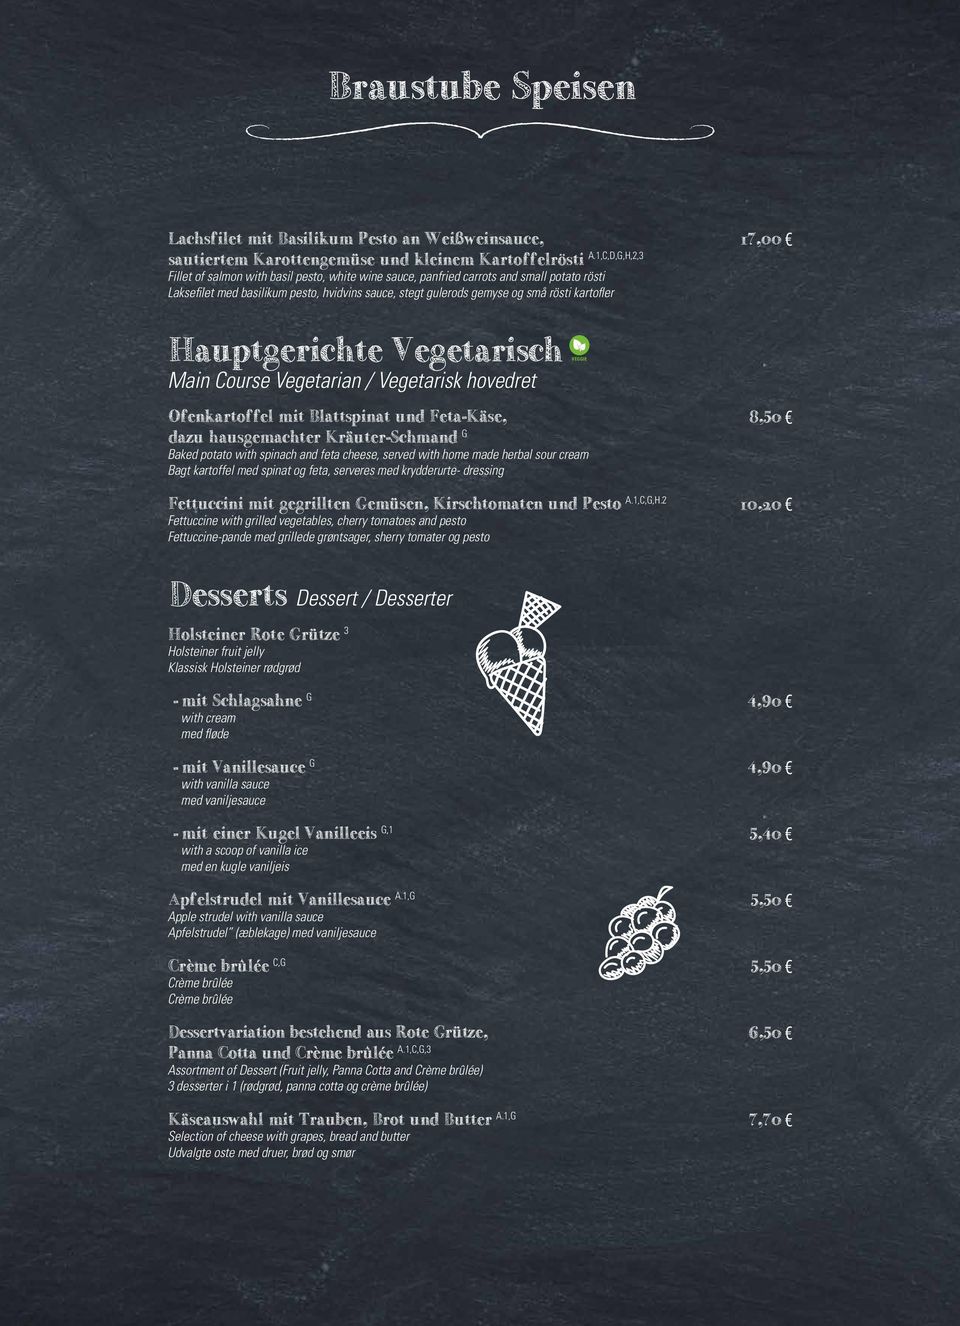 Hauptgerichte Vegetarisch Main Course Vegetarian / Vegetarisk hovedret Ofenkartoffel mit Blattspinat und Feta-Käse, dazu hausgemachter Kräuter-Schmand G Baked potato with spinach and feta cheese,